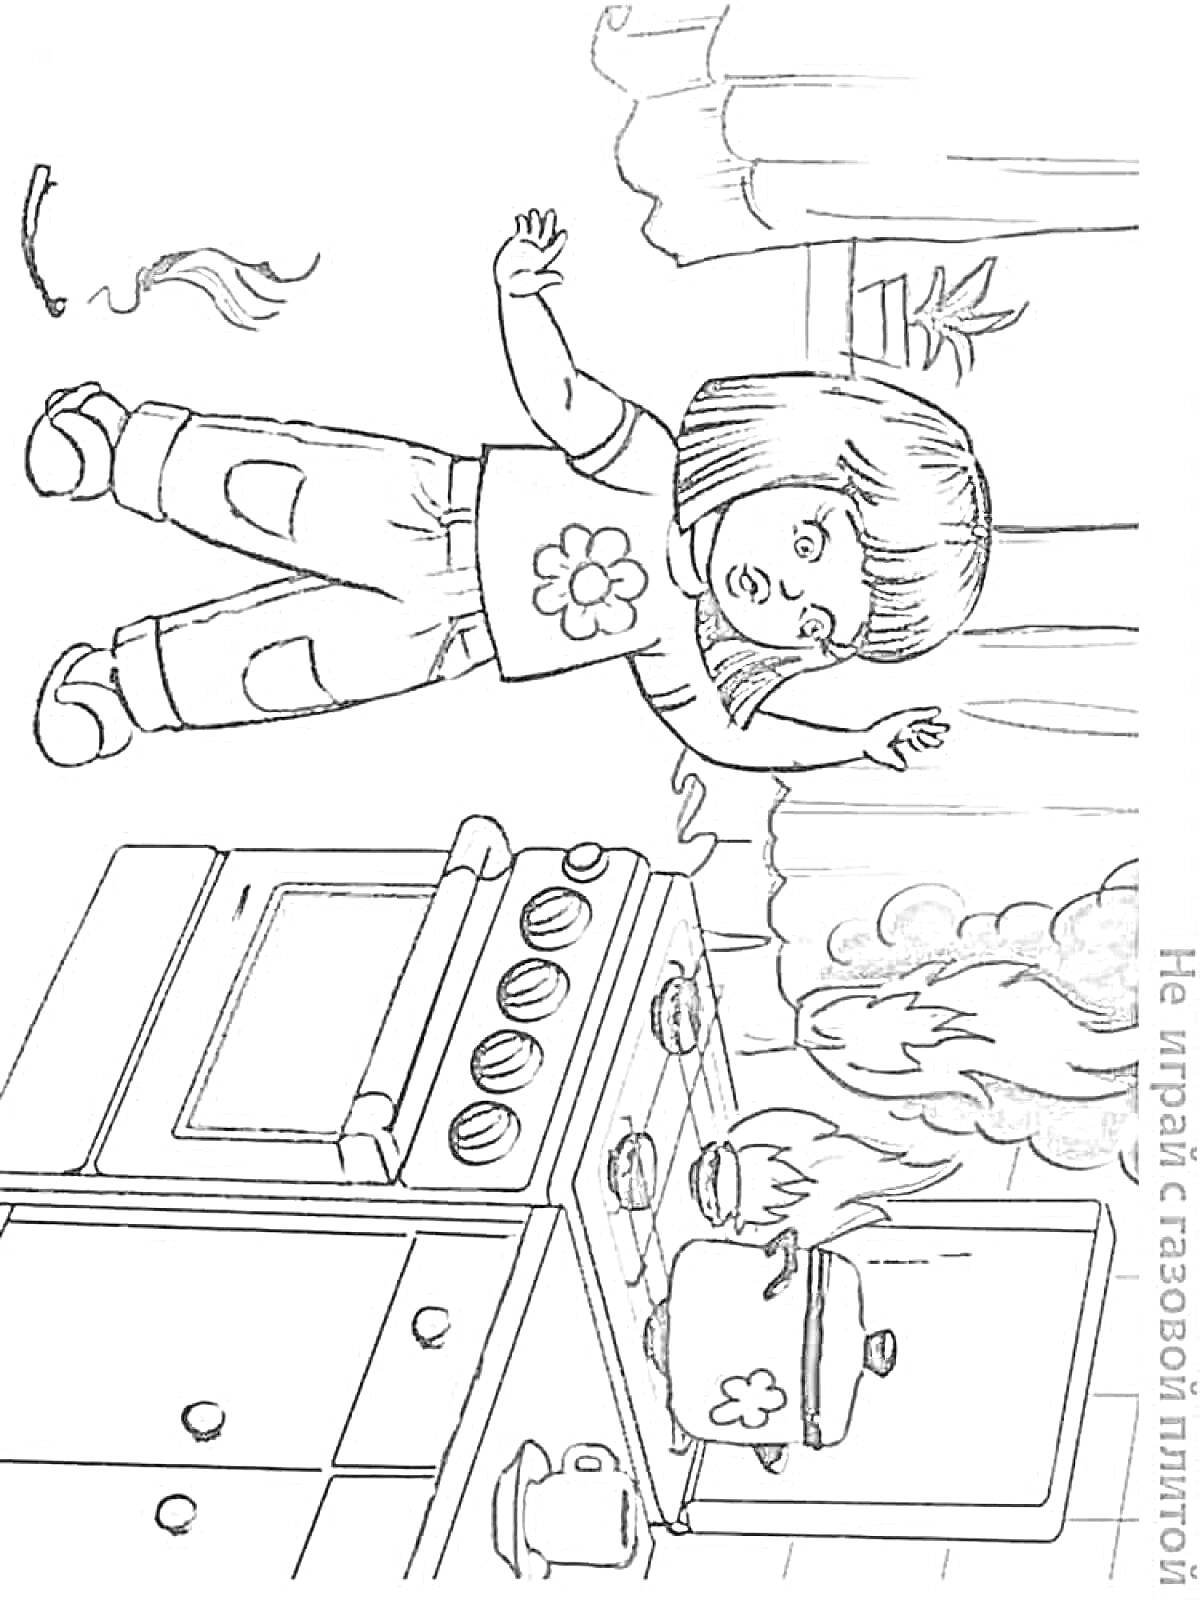 Раскраска Девочка у плиты с огнем, перевернутая кастрюля, огонь на плите